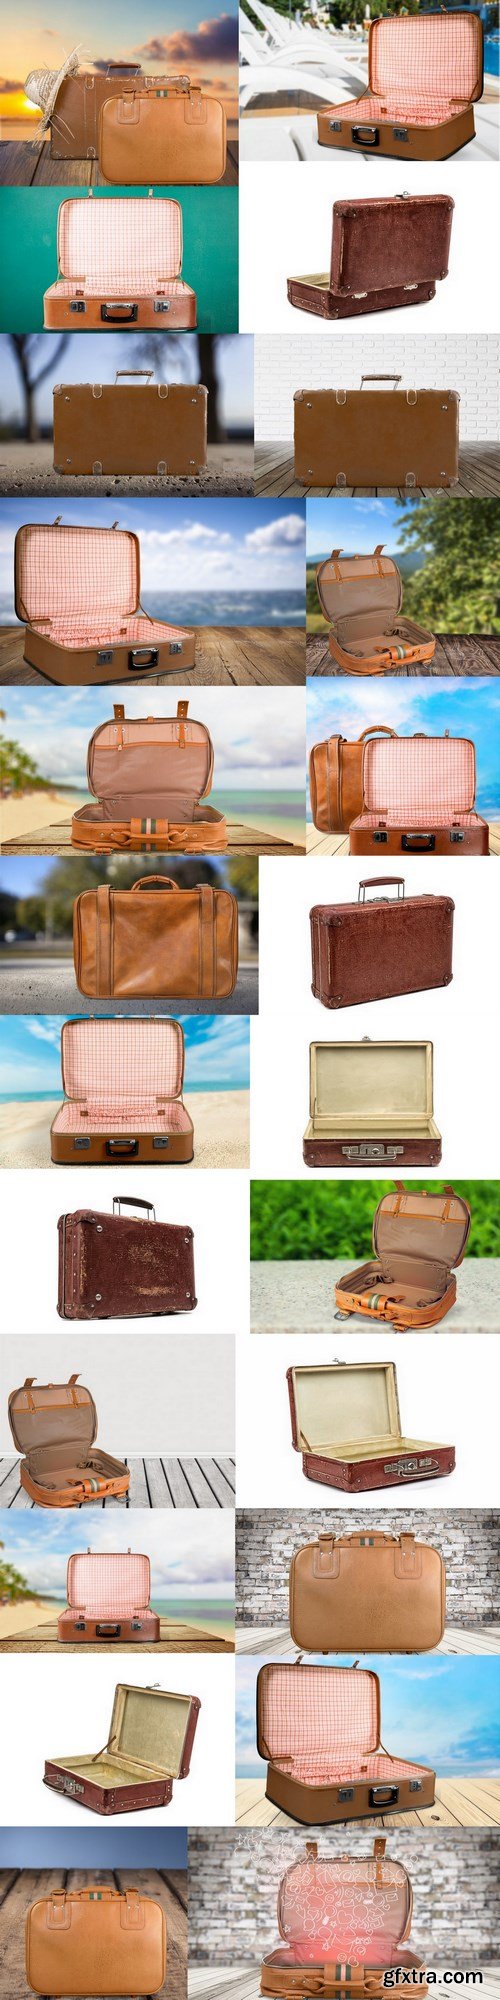 Suitcase - 24 UHQ JPEG